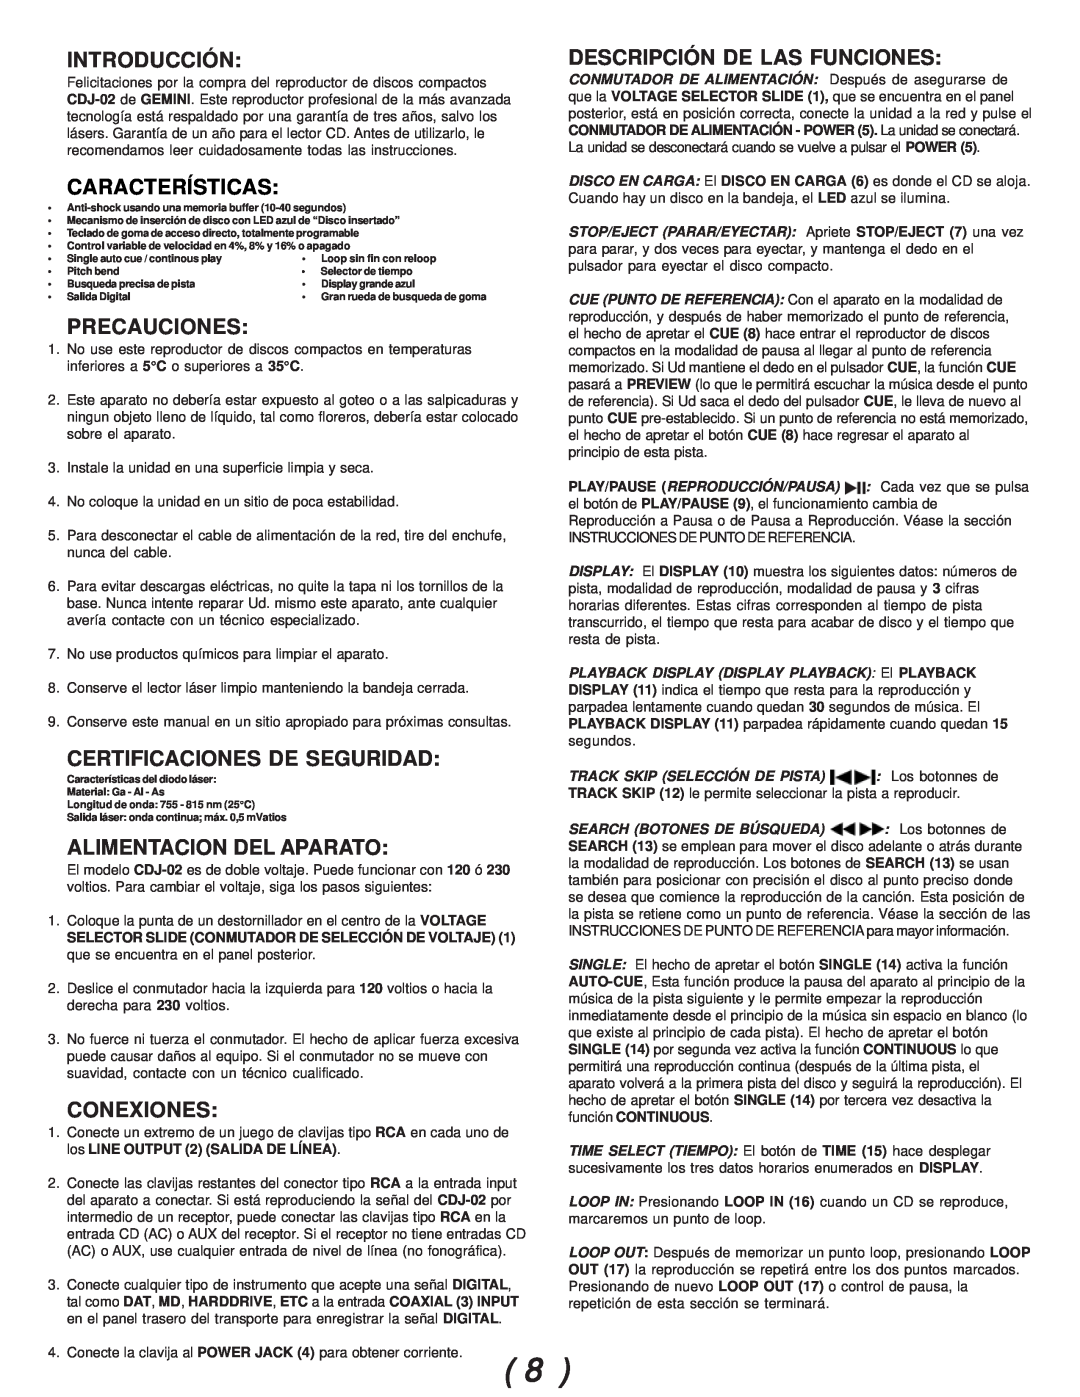 Gemini CDJ-02 manual Introducción, Precauciones, Certificaciones De Seguridad, Alimentacion Del Aparato, Conexiones 